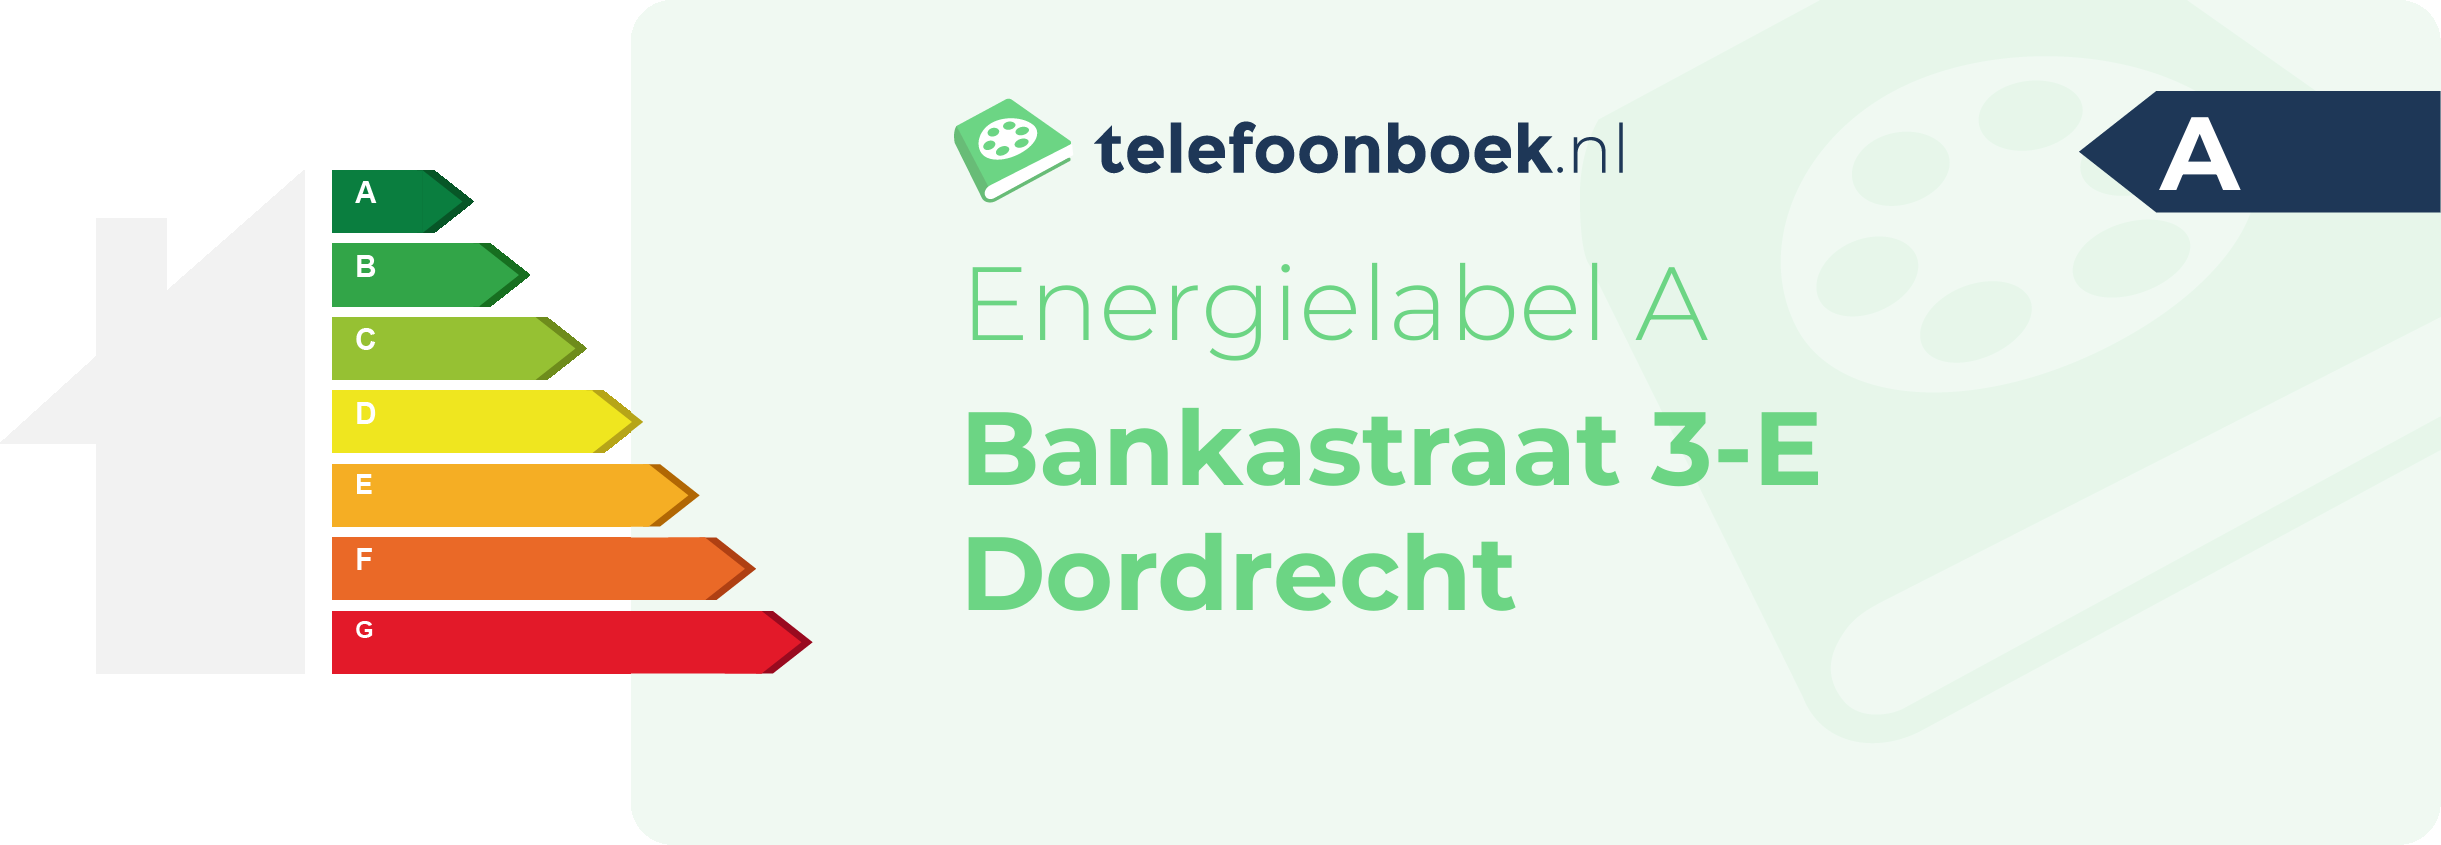 Energielabel Bankastraat 3-E Dordrecht